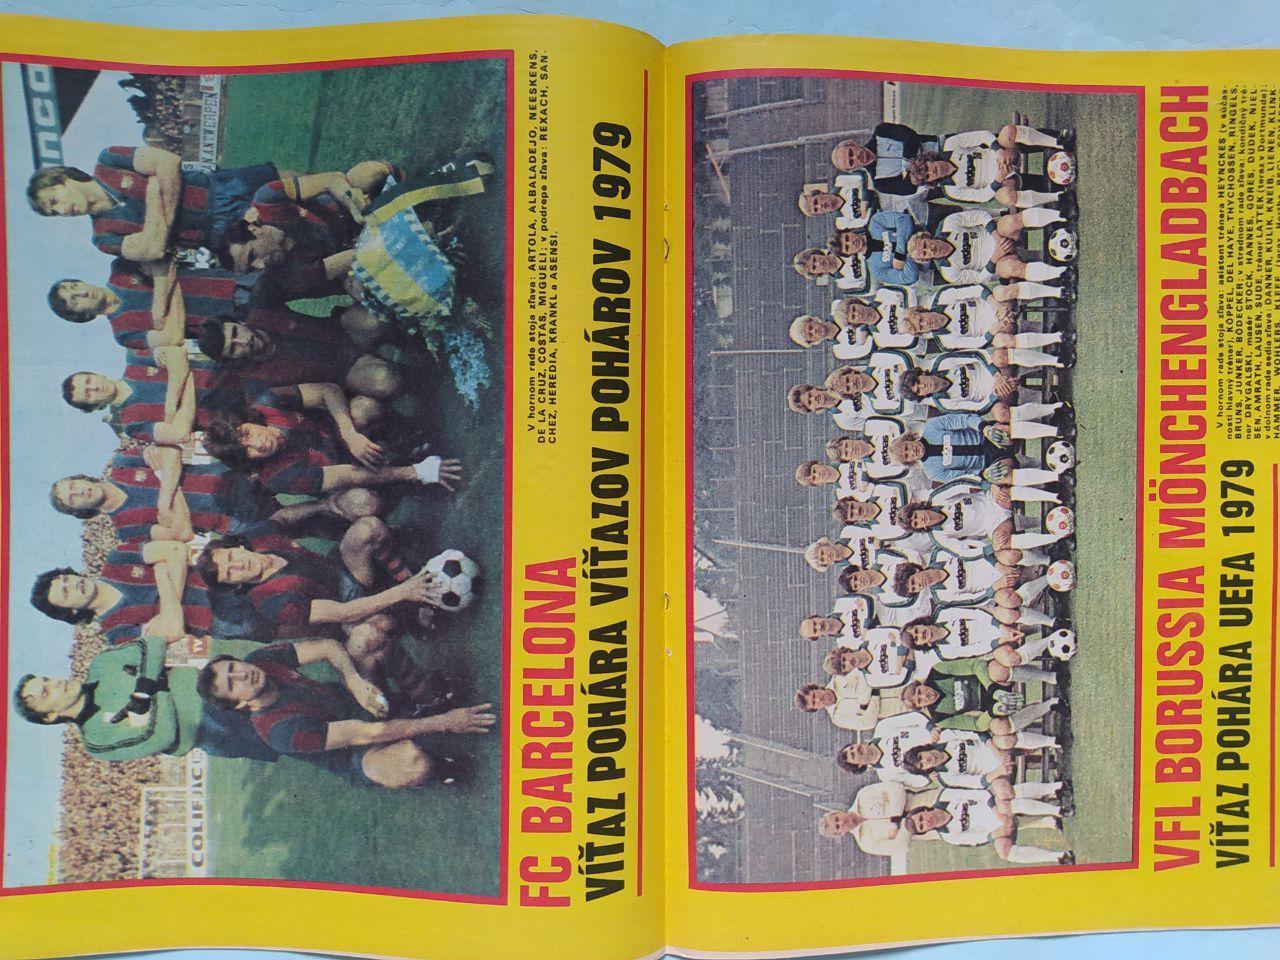 Журнал Старт Чехословакия № 32 за 1979 год европейский футбол 1979 год 4